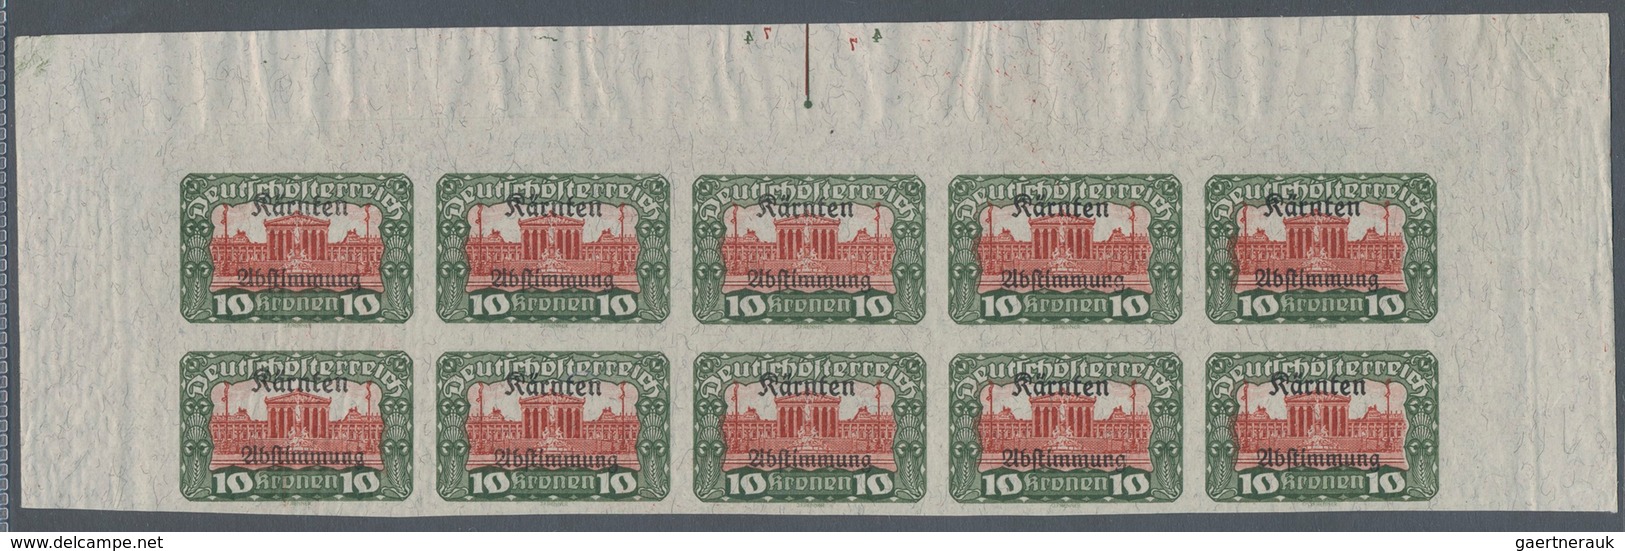 Österreich: 1920, Volksabstimmung Kärnten, 2½ Kr. bis 20 Kr., Partie von 53 Werten (ein Wert 7½ Kr.